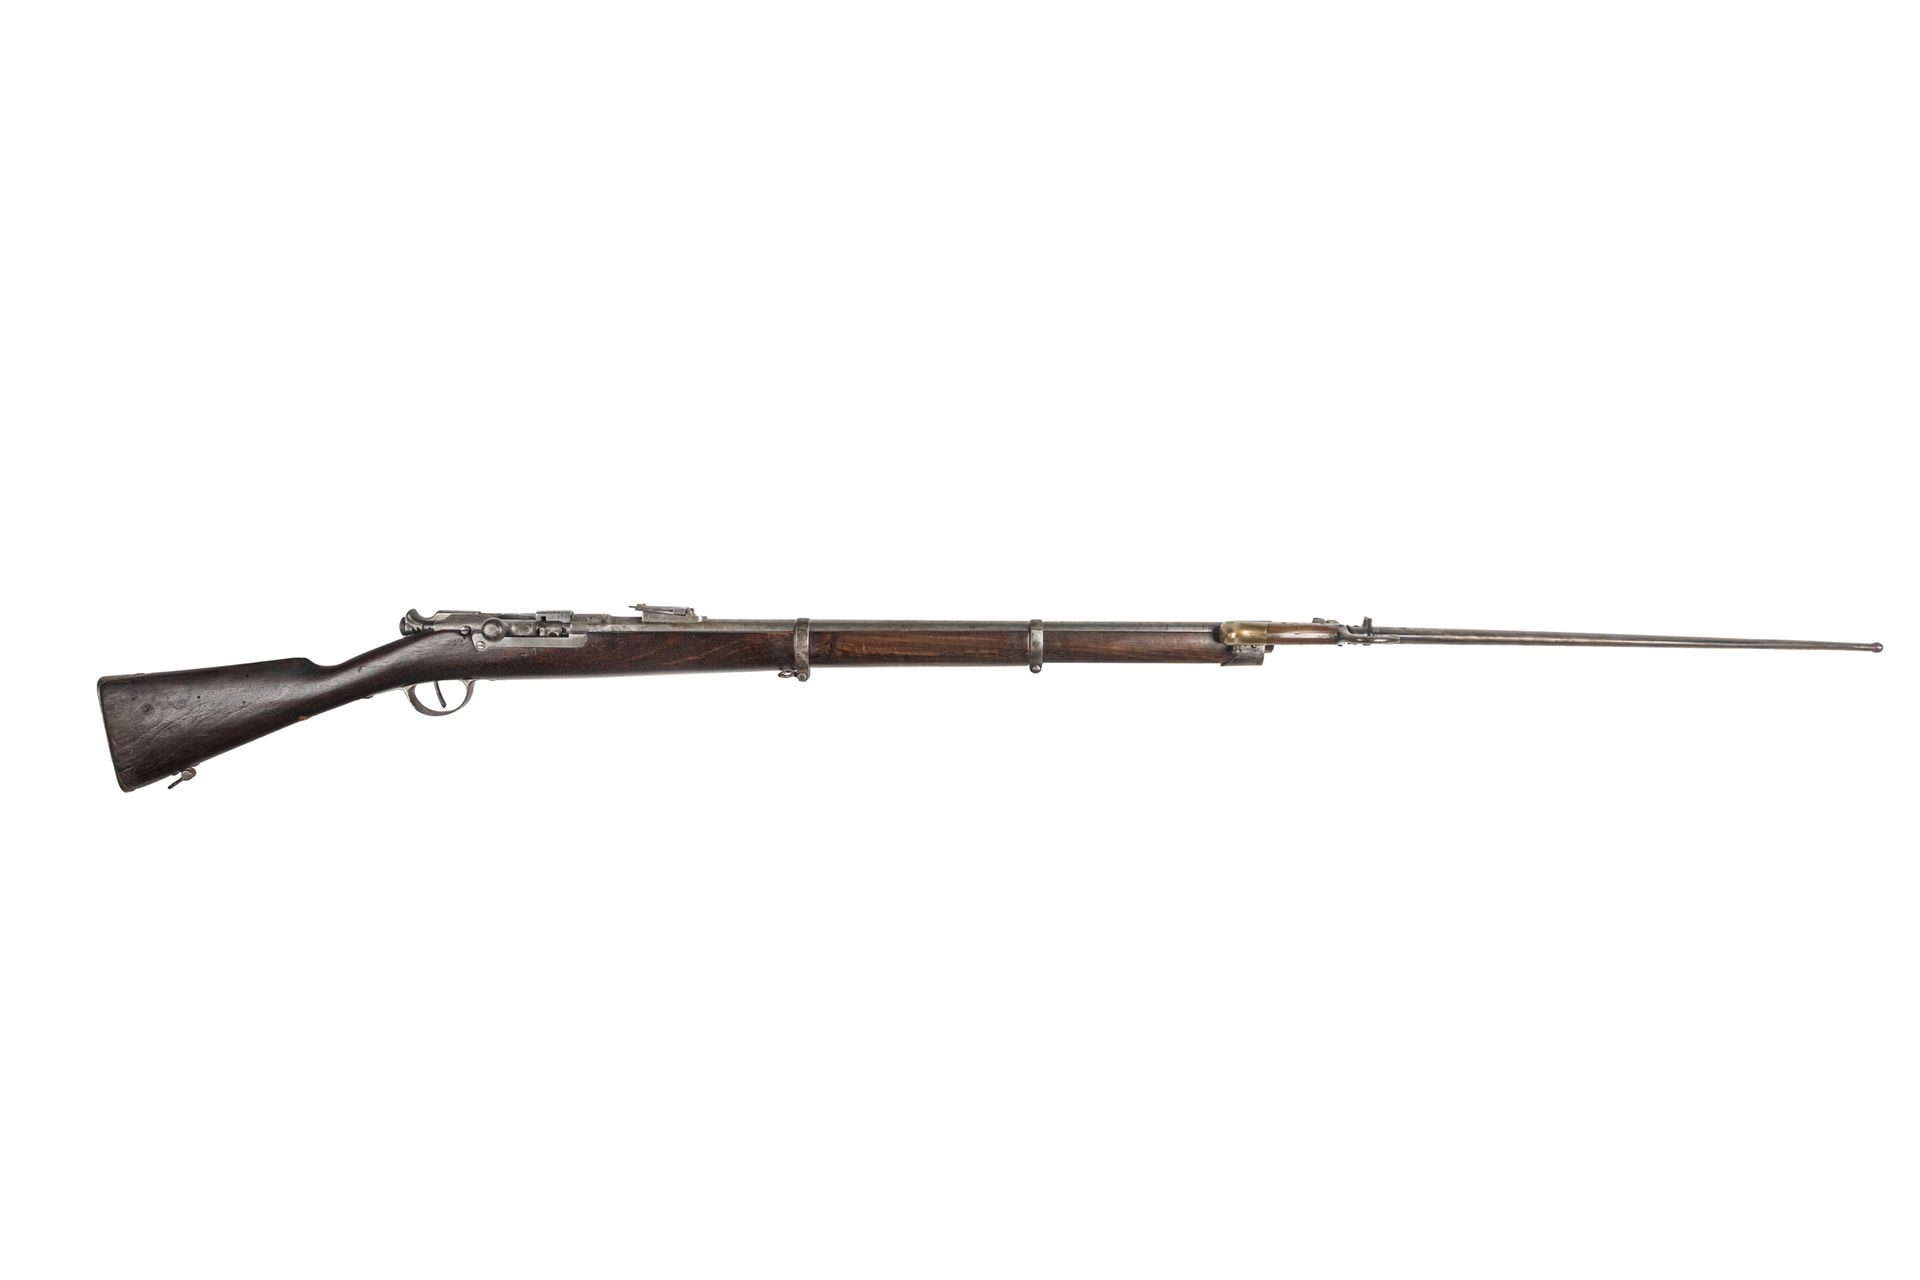 Null Fusil marino Kropatschek modelo 1878, calibre 11mm. 

Cañón redondo de rayo&hellip;